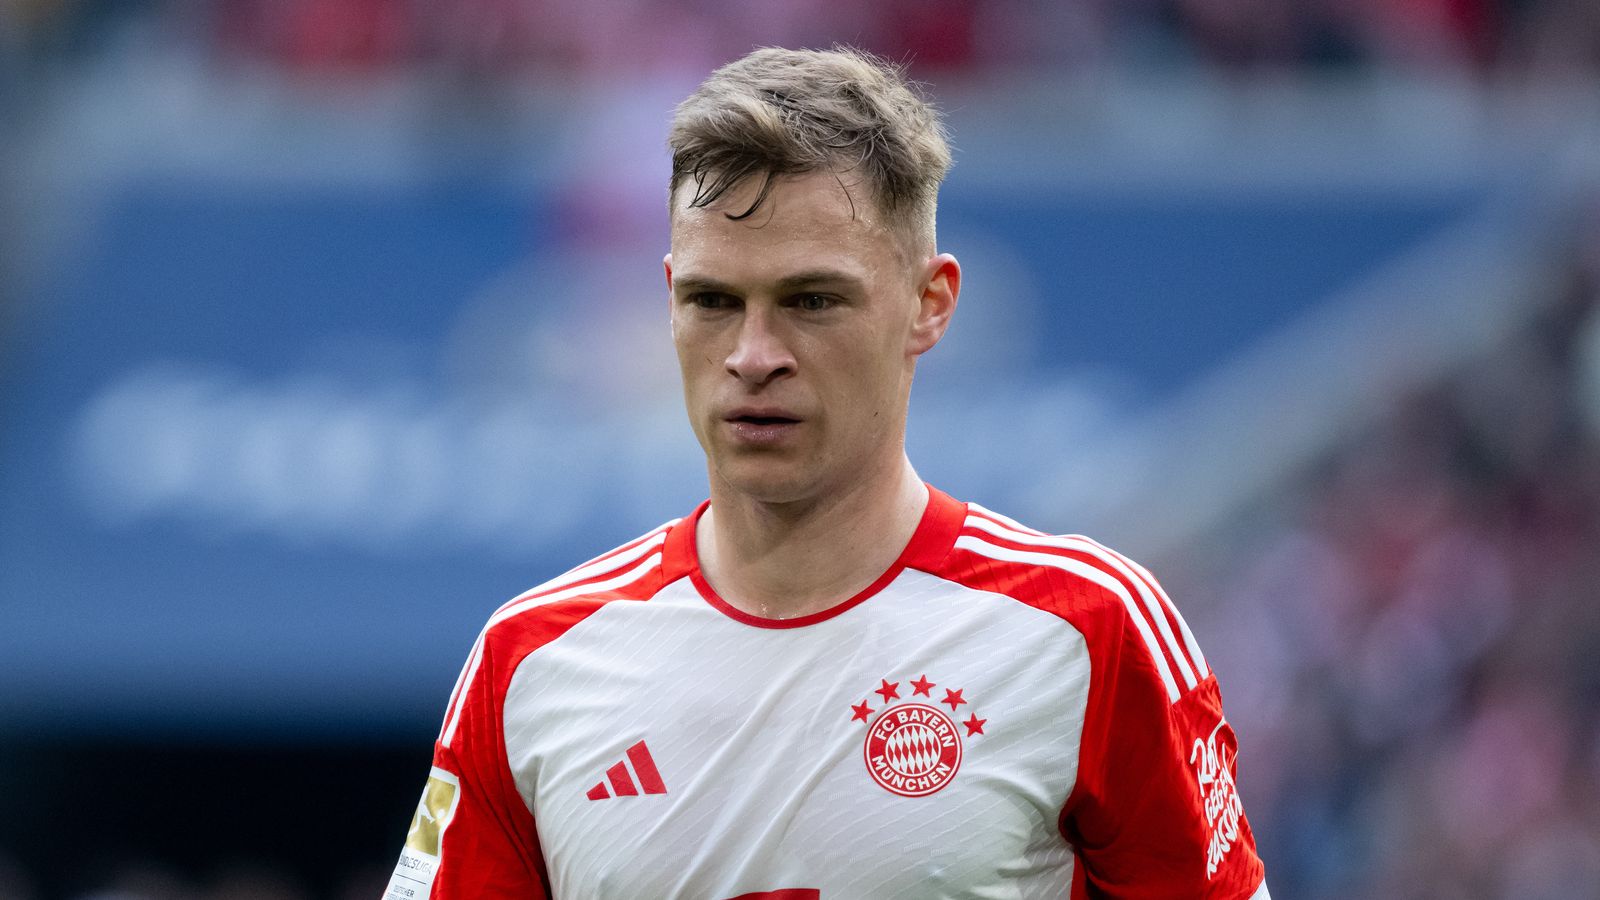 “Un fattore importante”: Kimmich e il suo futuro al Bayern Monaco